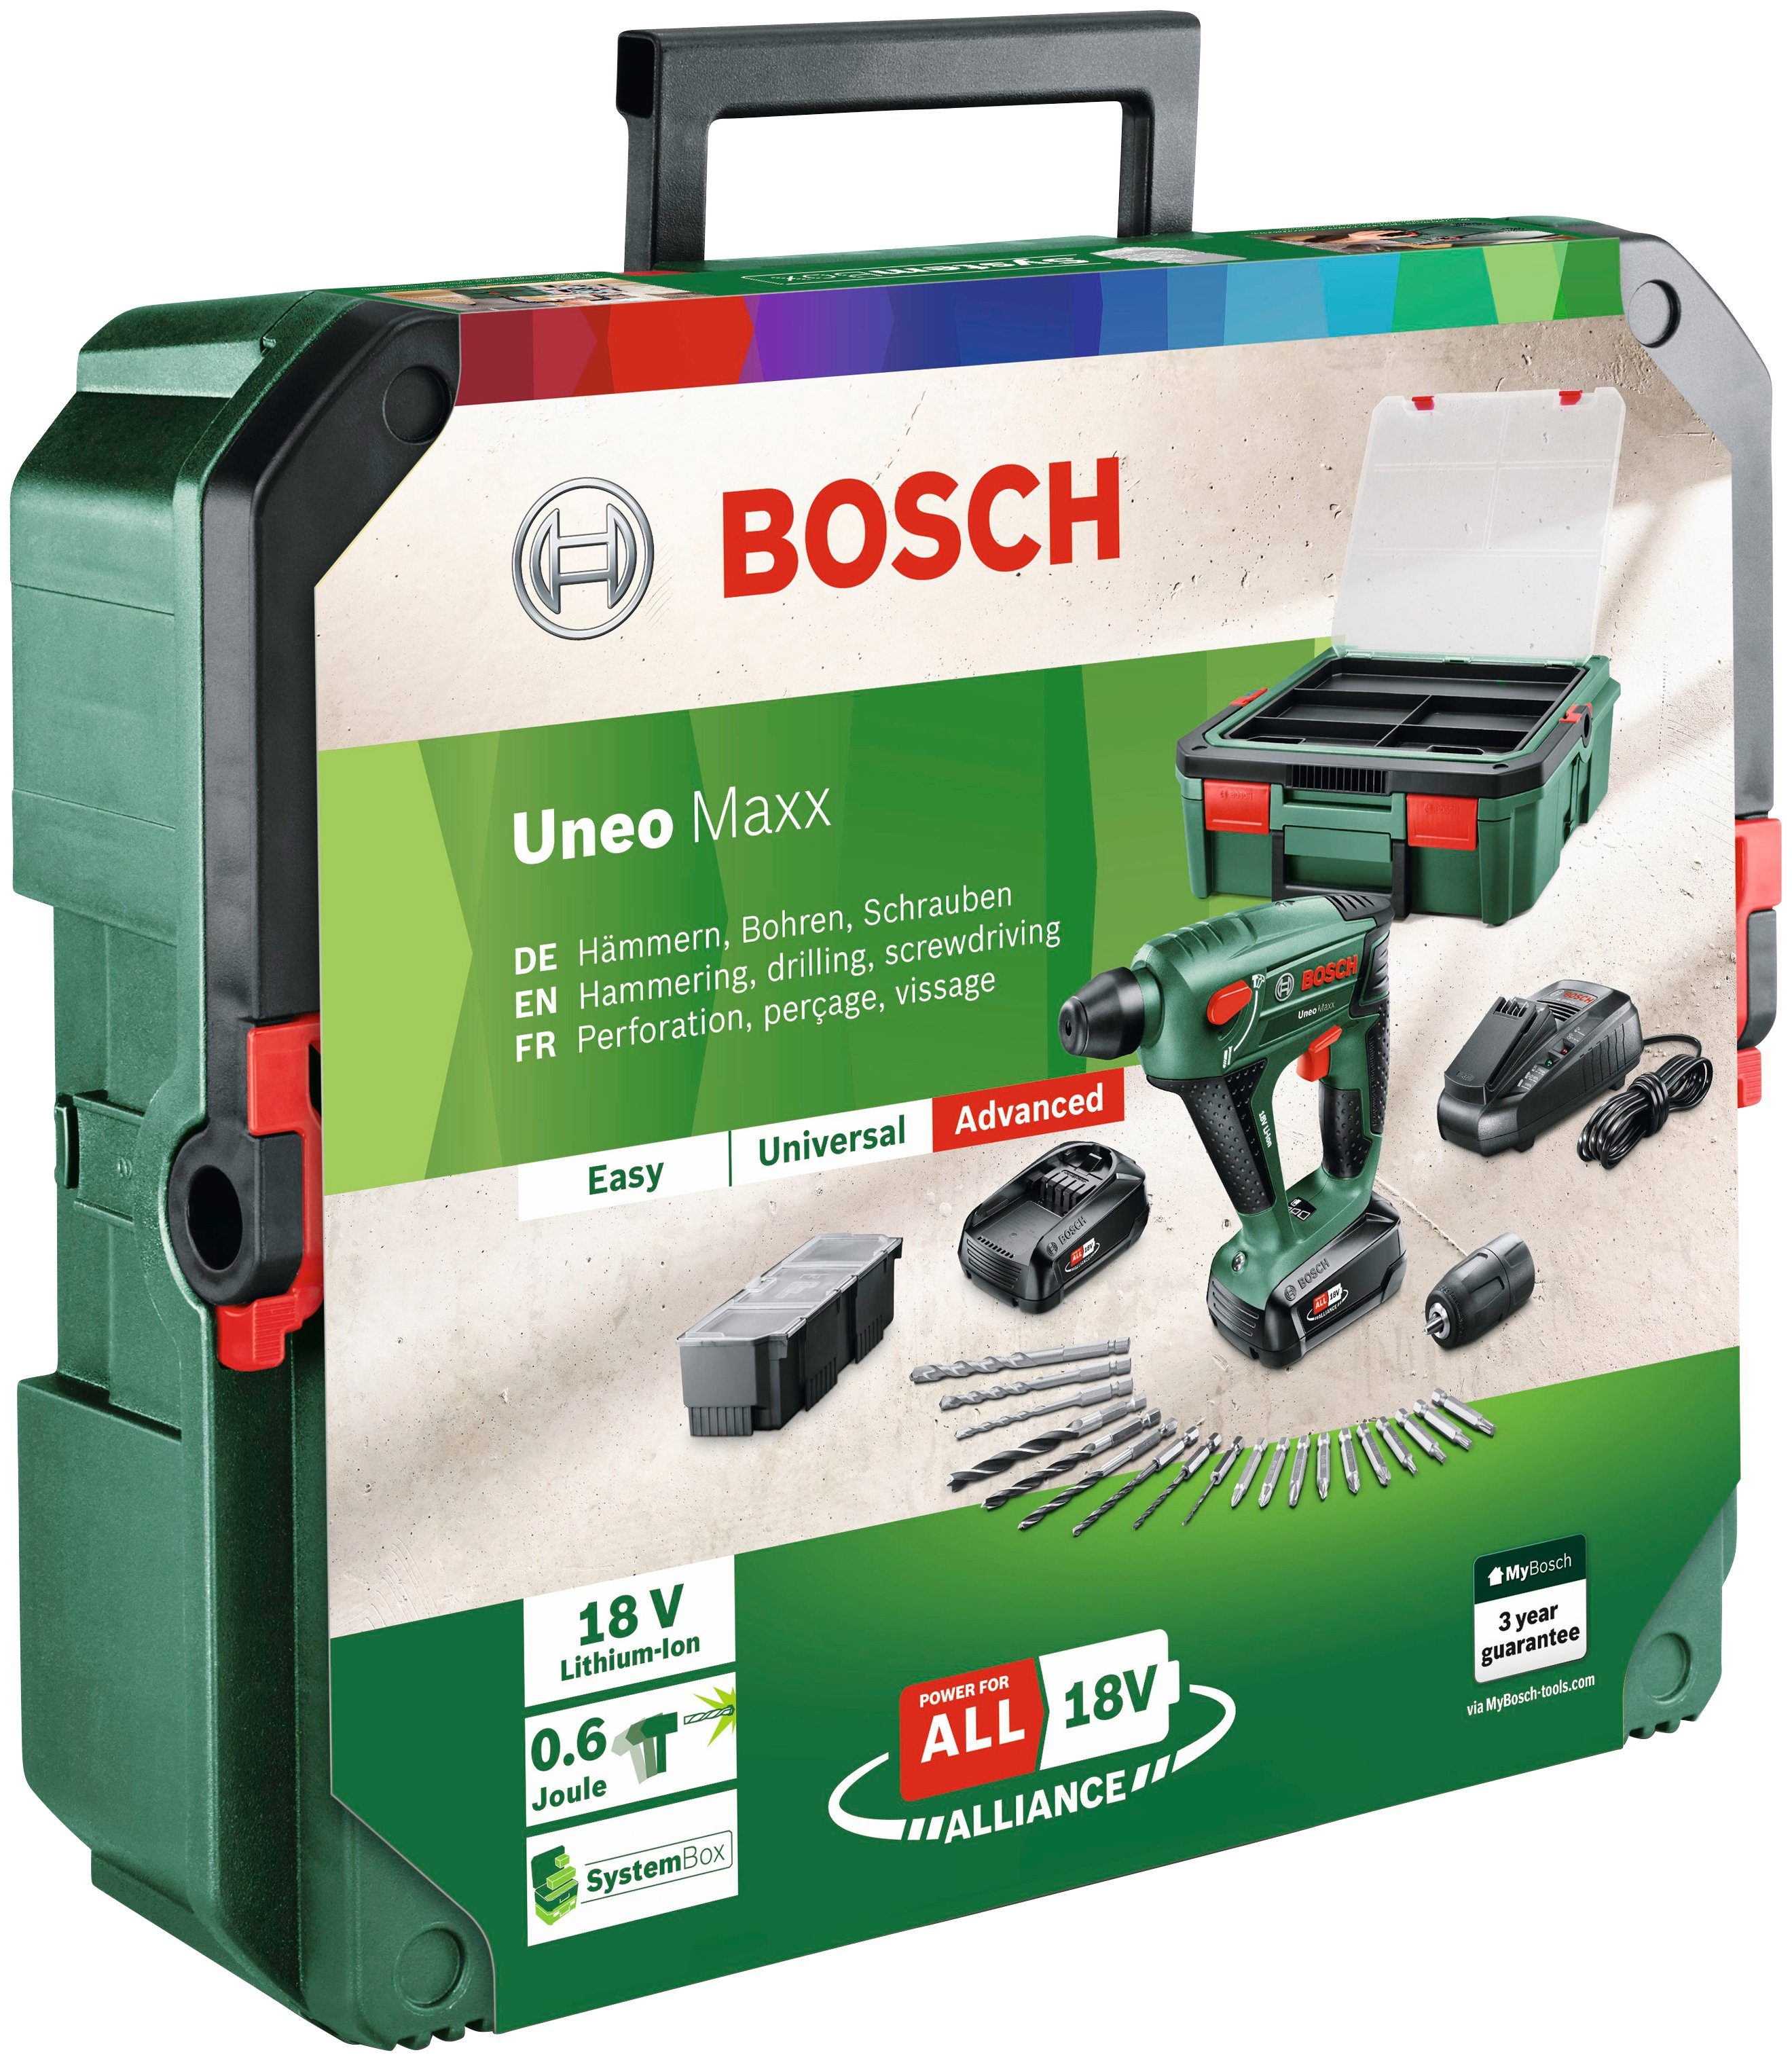 Bosch Home & Garden Akku-Bohrhammer mit Uneo Ladegerät + 2 SystemBox, Maxx und Akkus